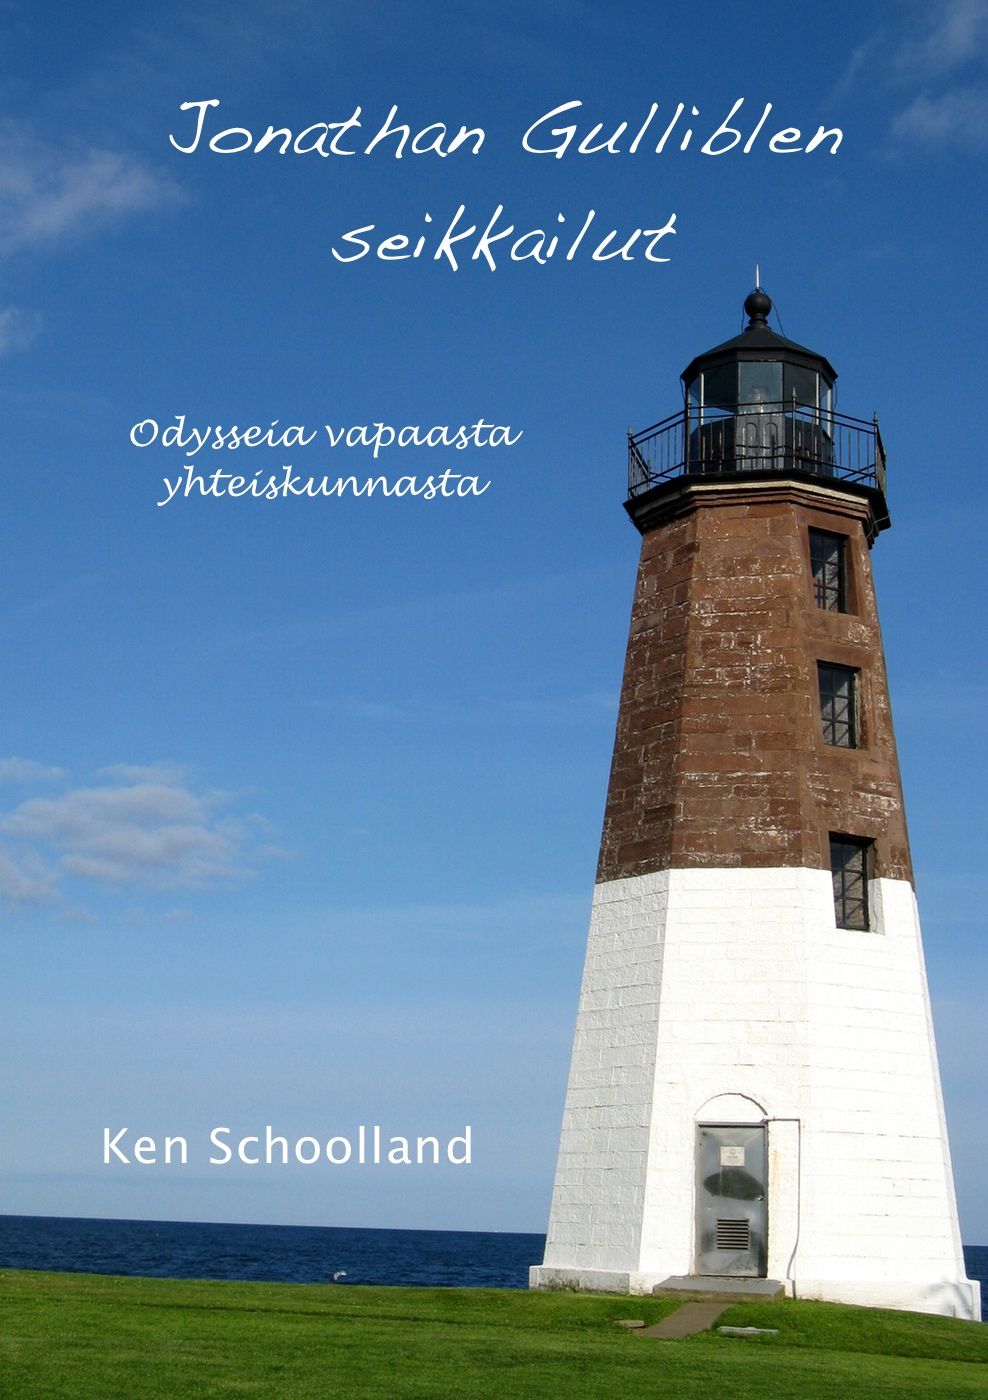 Jonathan Gulliblen seikkailut, e-bog af Ken Schoolland